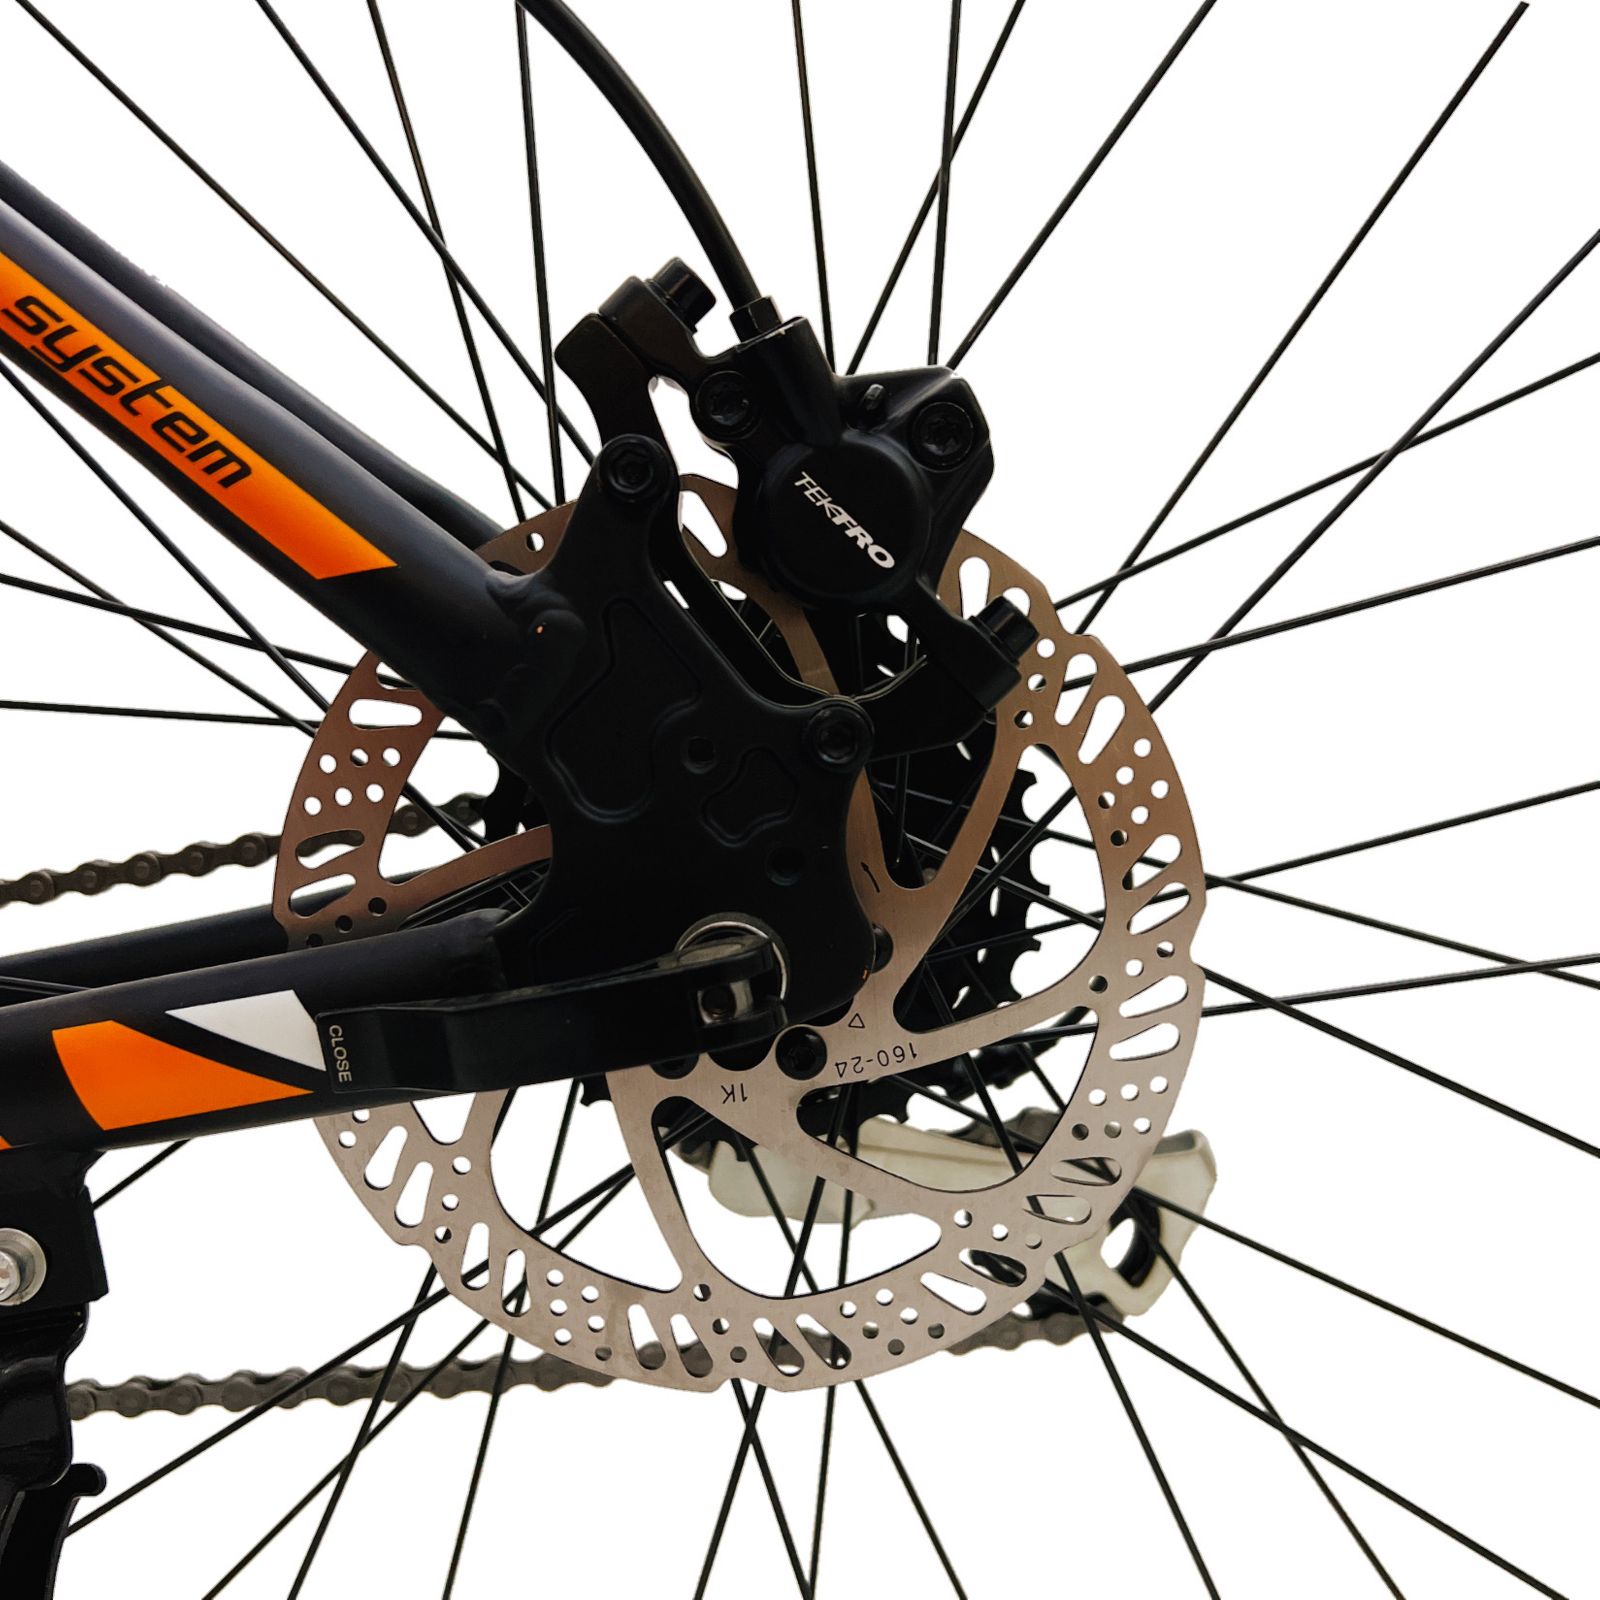 دوچرخه کوهستان ویوا مدل TERMINATOR کد هیدرولیک سایز 27.5 -  - 18